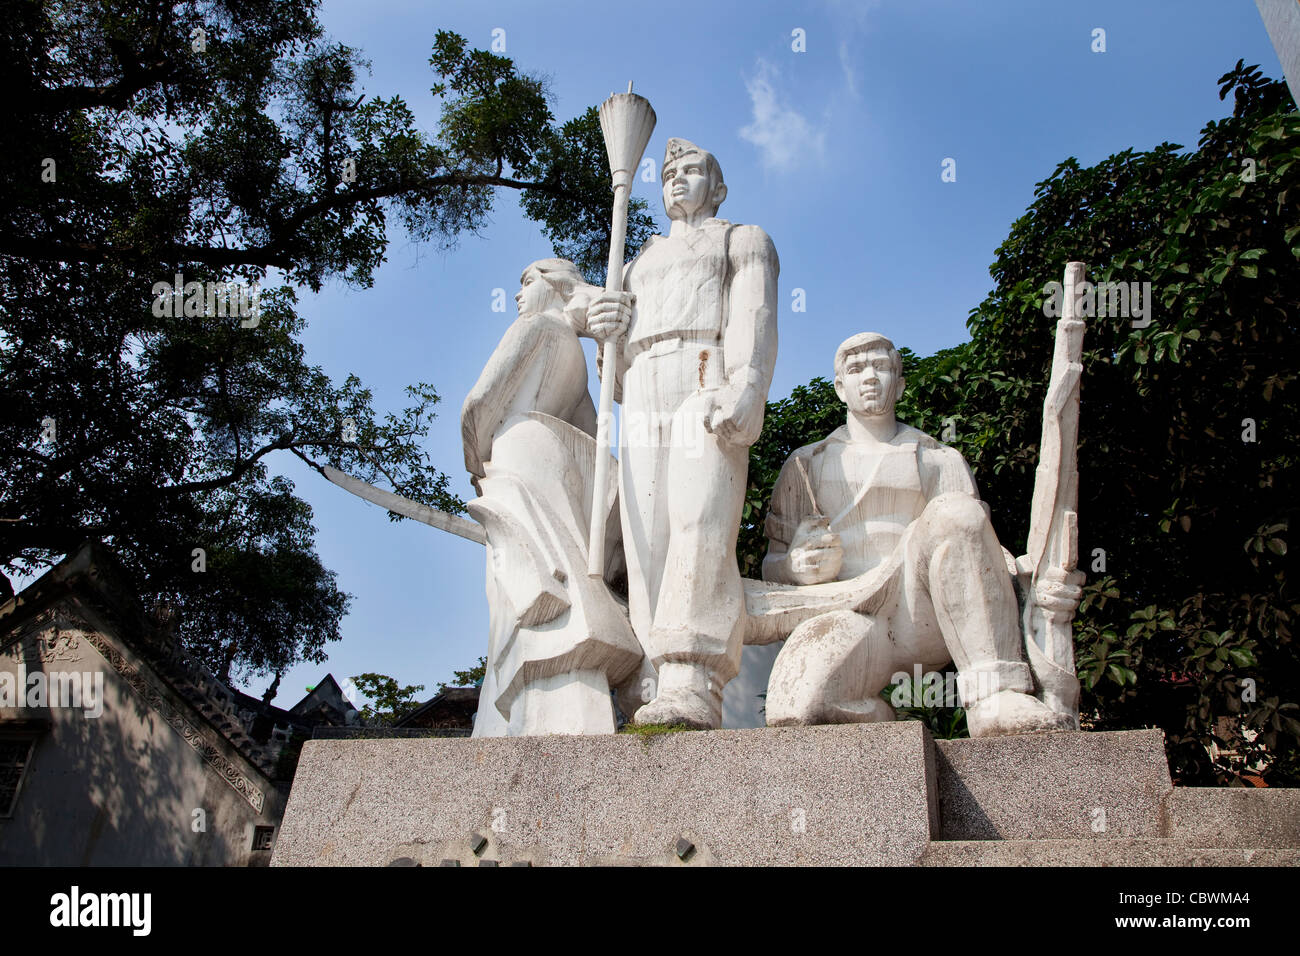 Patriotic monument and statue in Hanoi, Vietnam, Asia Stock Photo